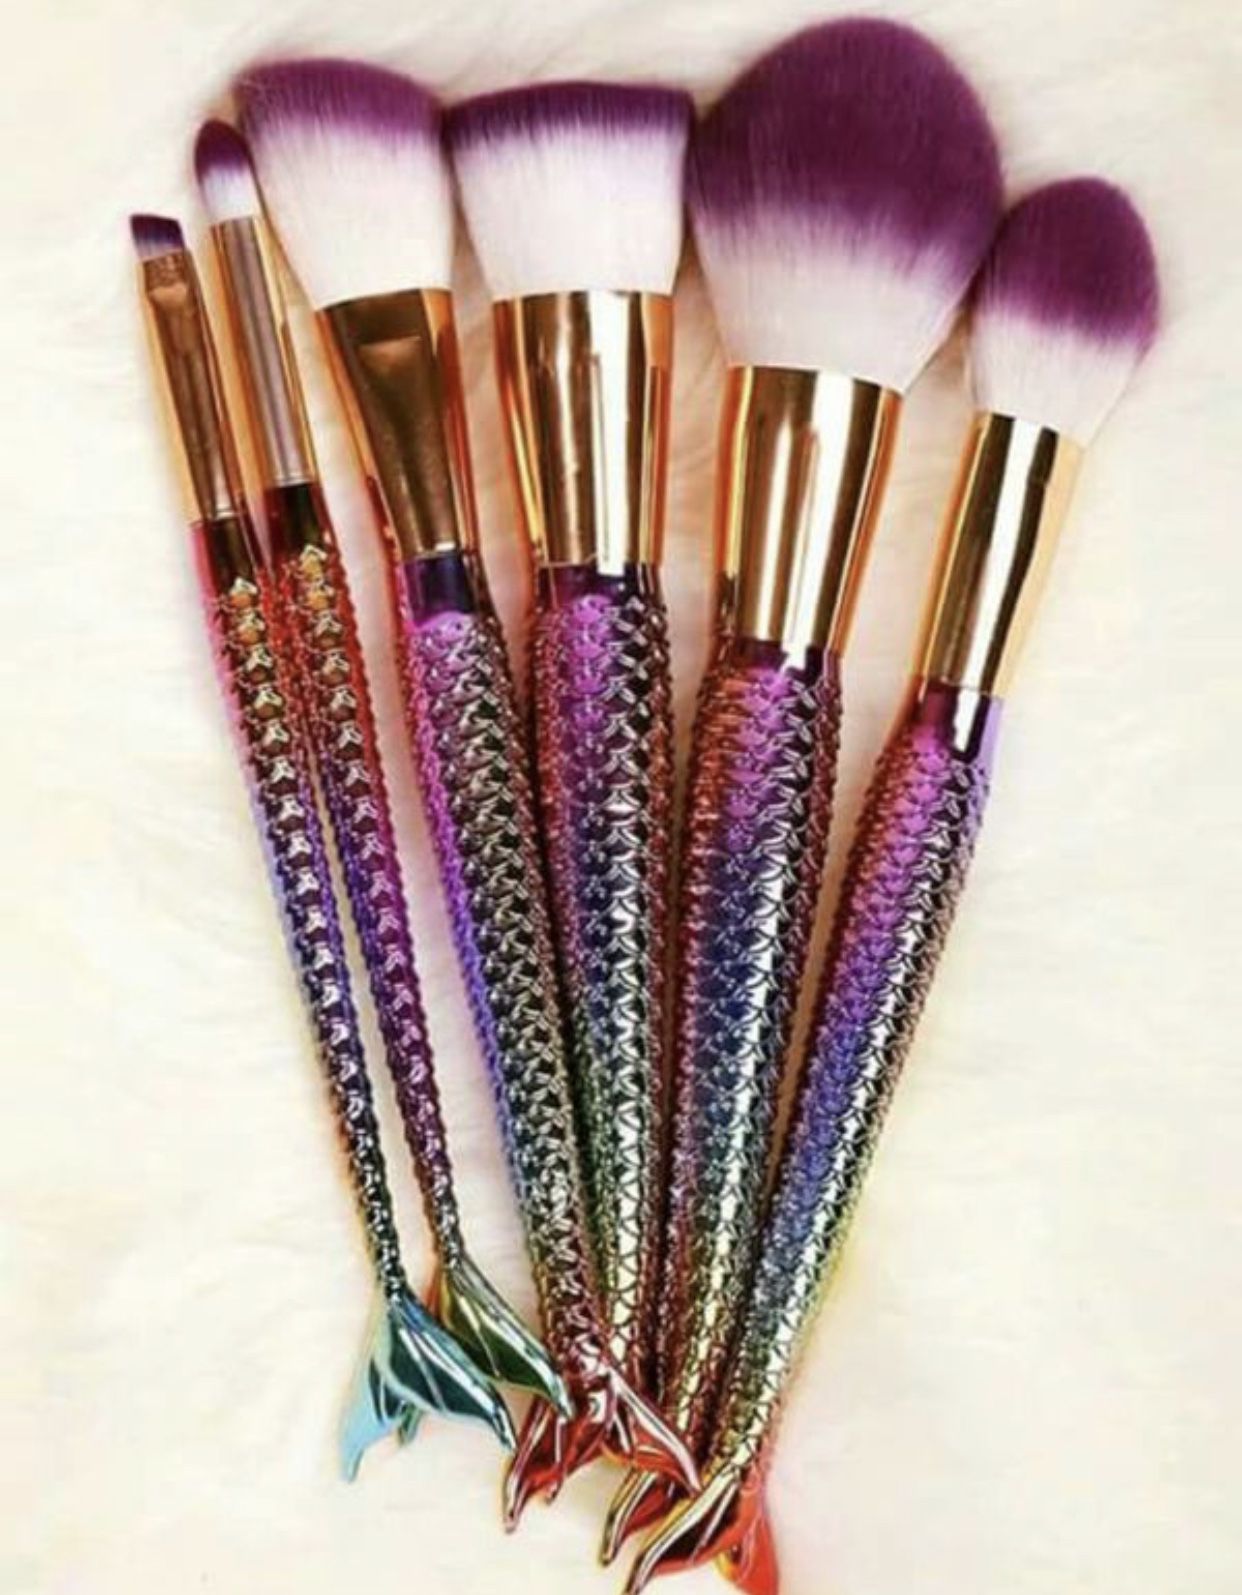 Mermaid makeup brushes